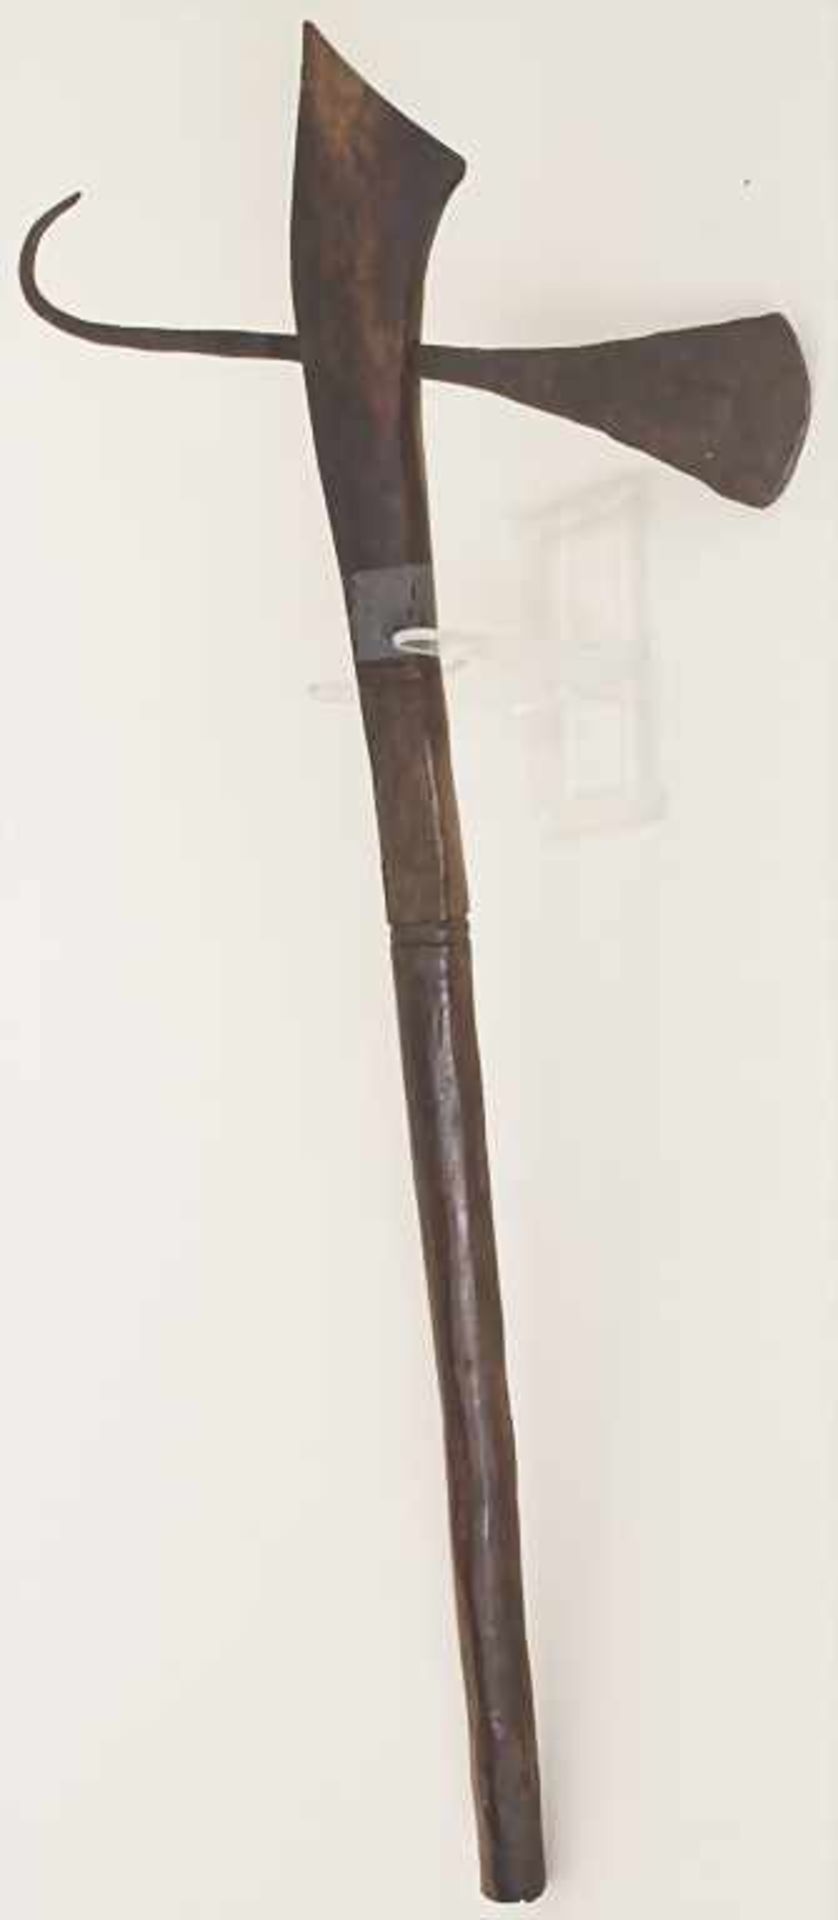 Axt mit Haken / An axe with hook, wohl NordafrikaMaterial: Holz, dunkel gebeizt, Eisen, Länge: 54